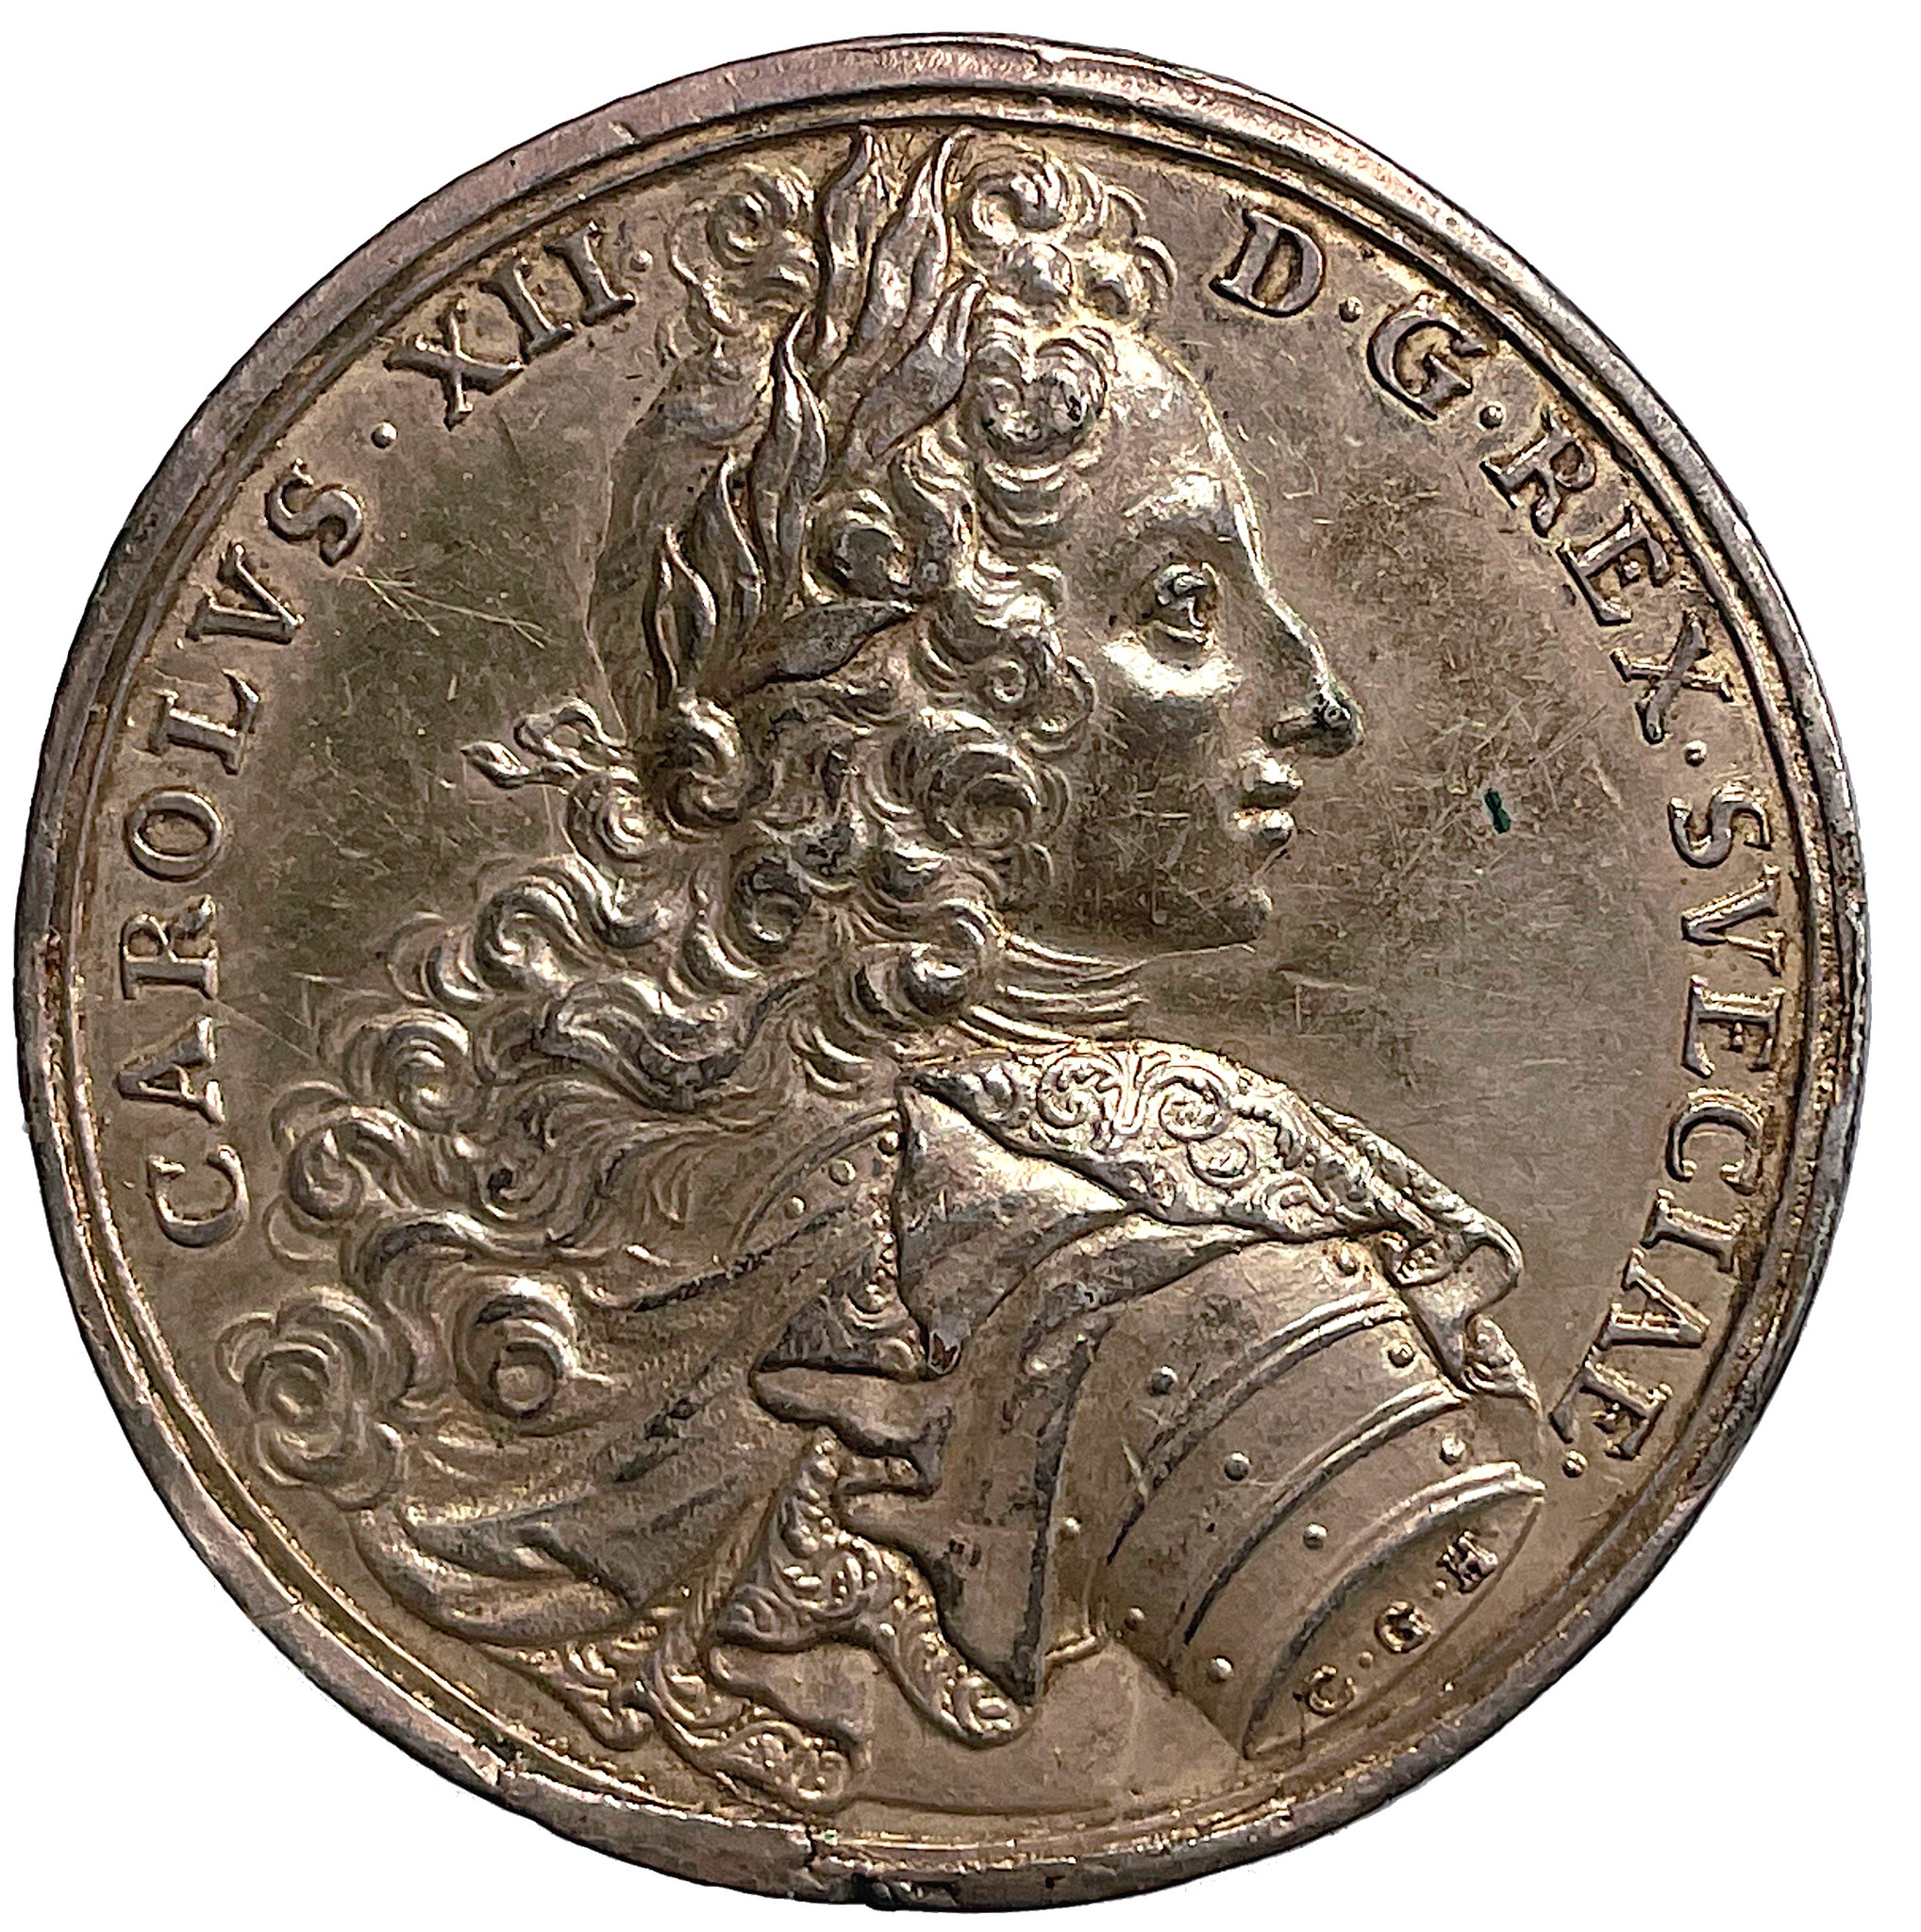 Karl XII och svenskarnas lysande seger över en mångdubbelt större rysk här vid Narva den 20 november 1700  av Carl Gustav Hartman - RRR i försilvrat tenn